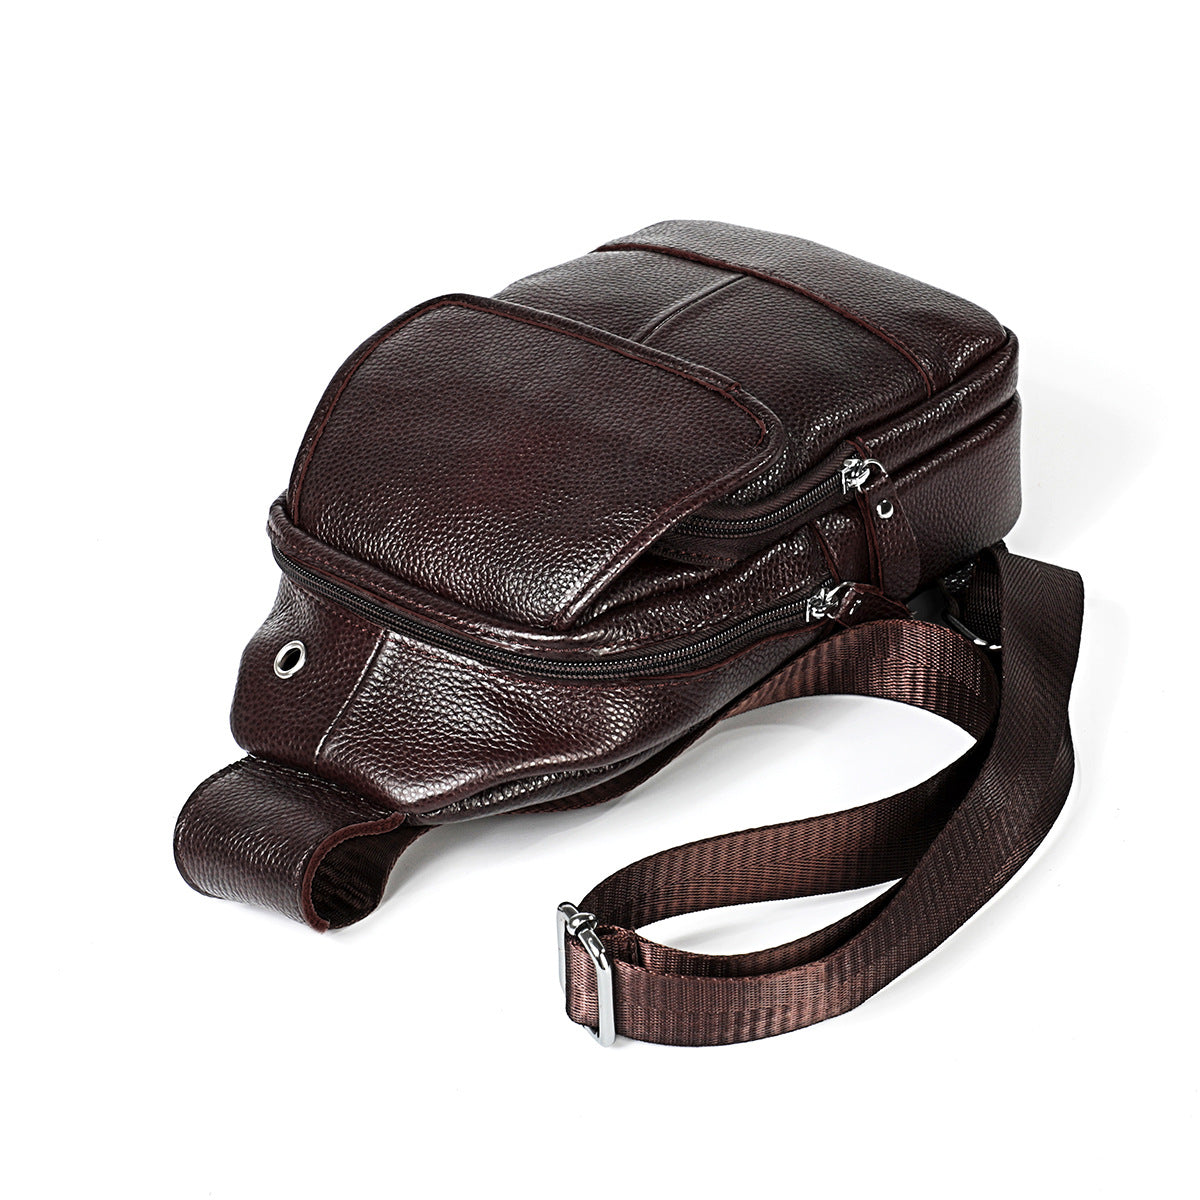 Genuine Leather Sling Backpack, Multipurpose Crossbody Shoulder Bag Travel Chest Bag Hiking Daypack